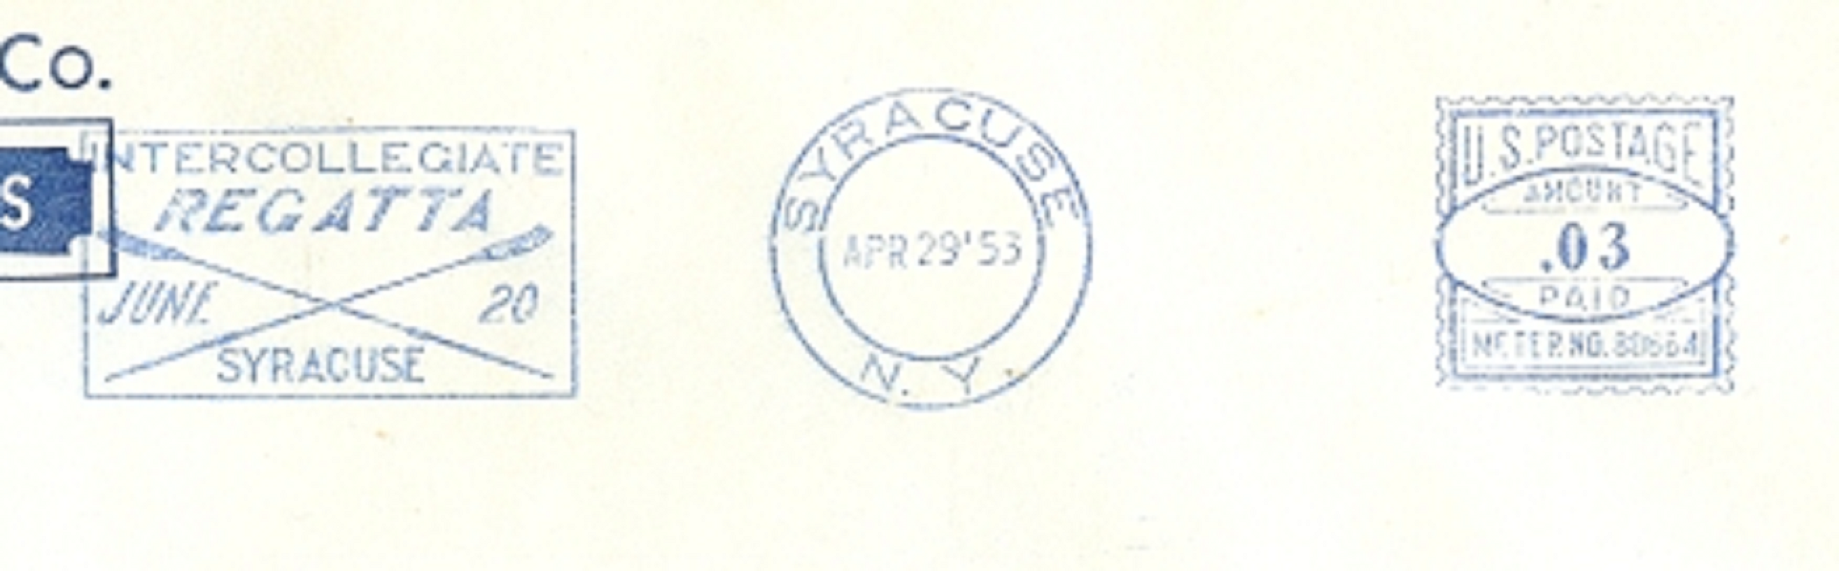 PM USA 1953 Apr. 29th Syracuse N.Y. blue postal meter Intercollegiate Regatta Syracuse 1